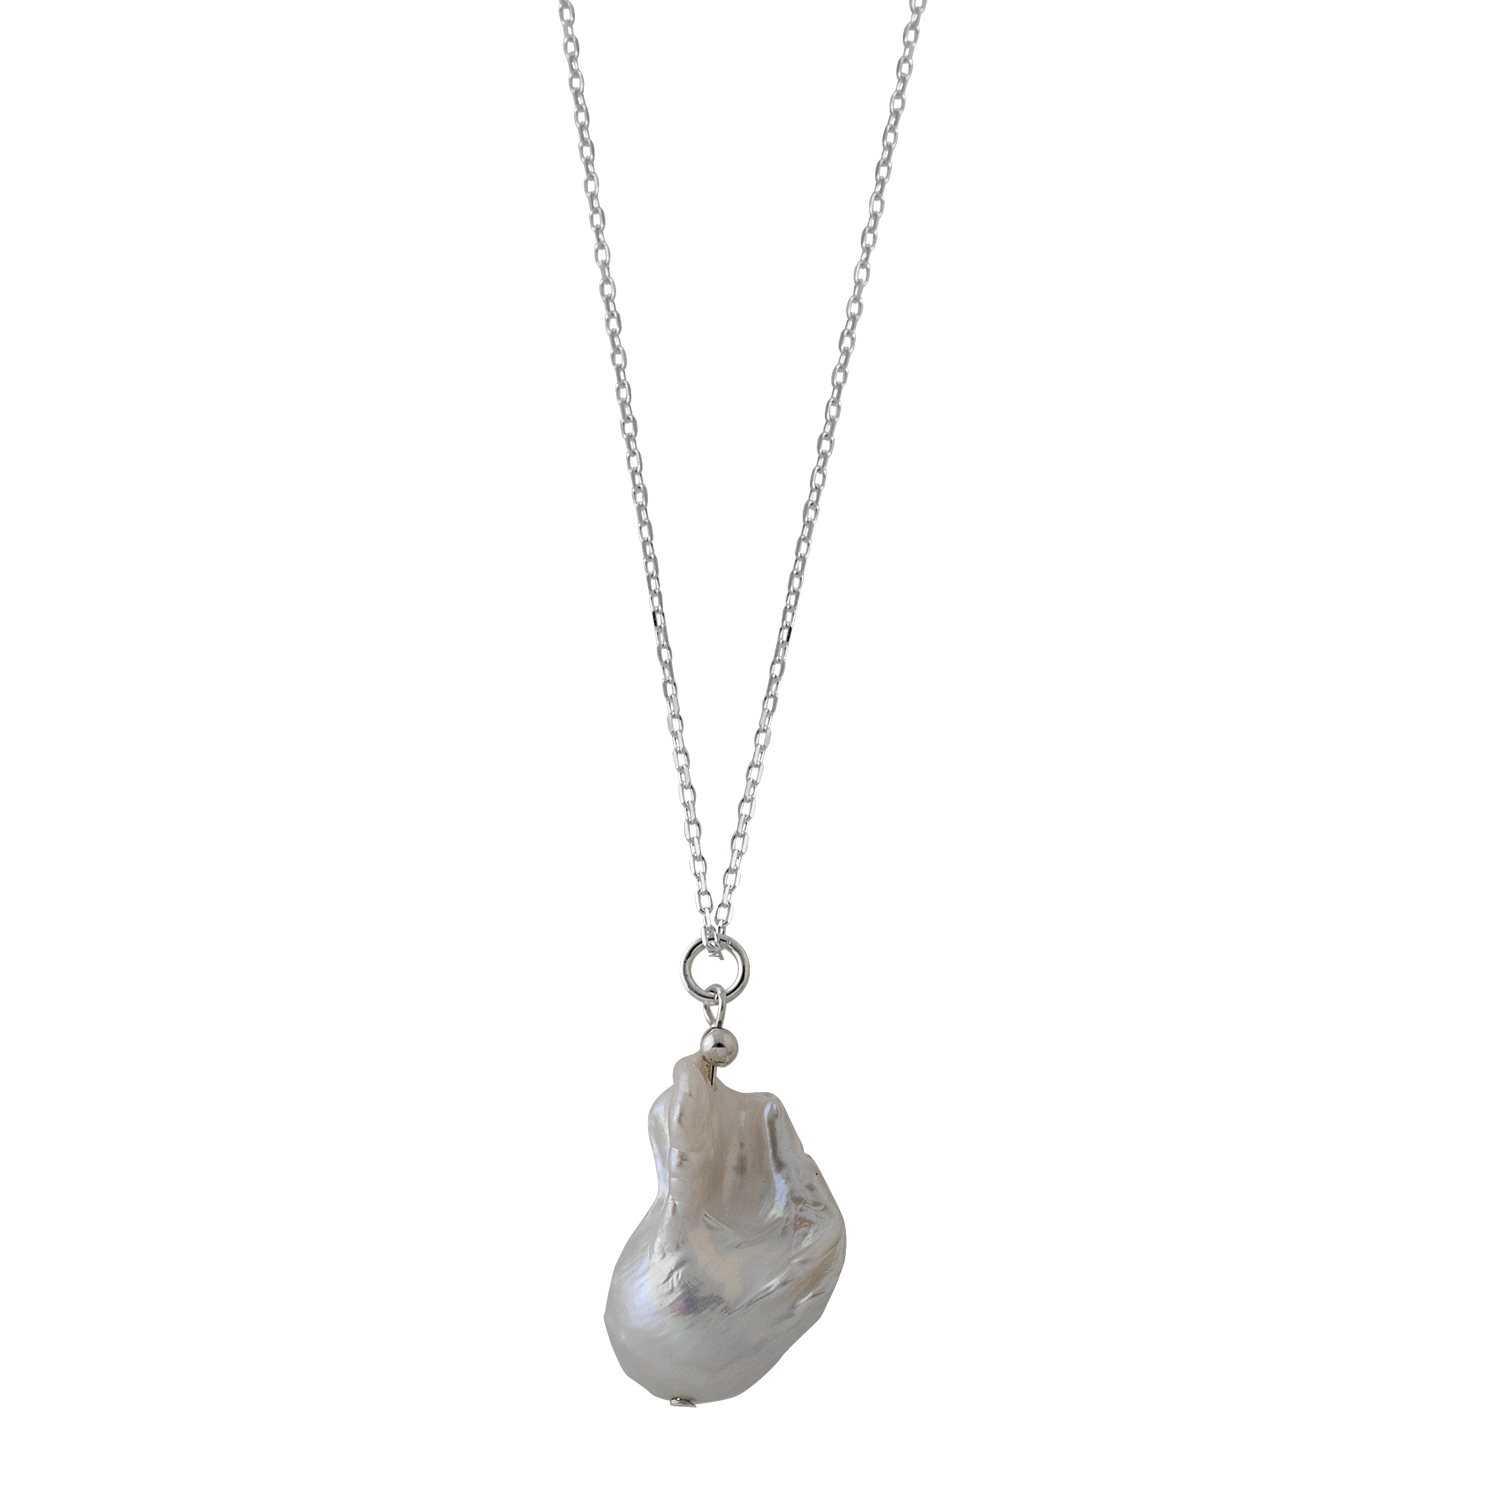 Adjustable necklace with baroque pearl - Von Treskow